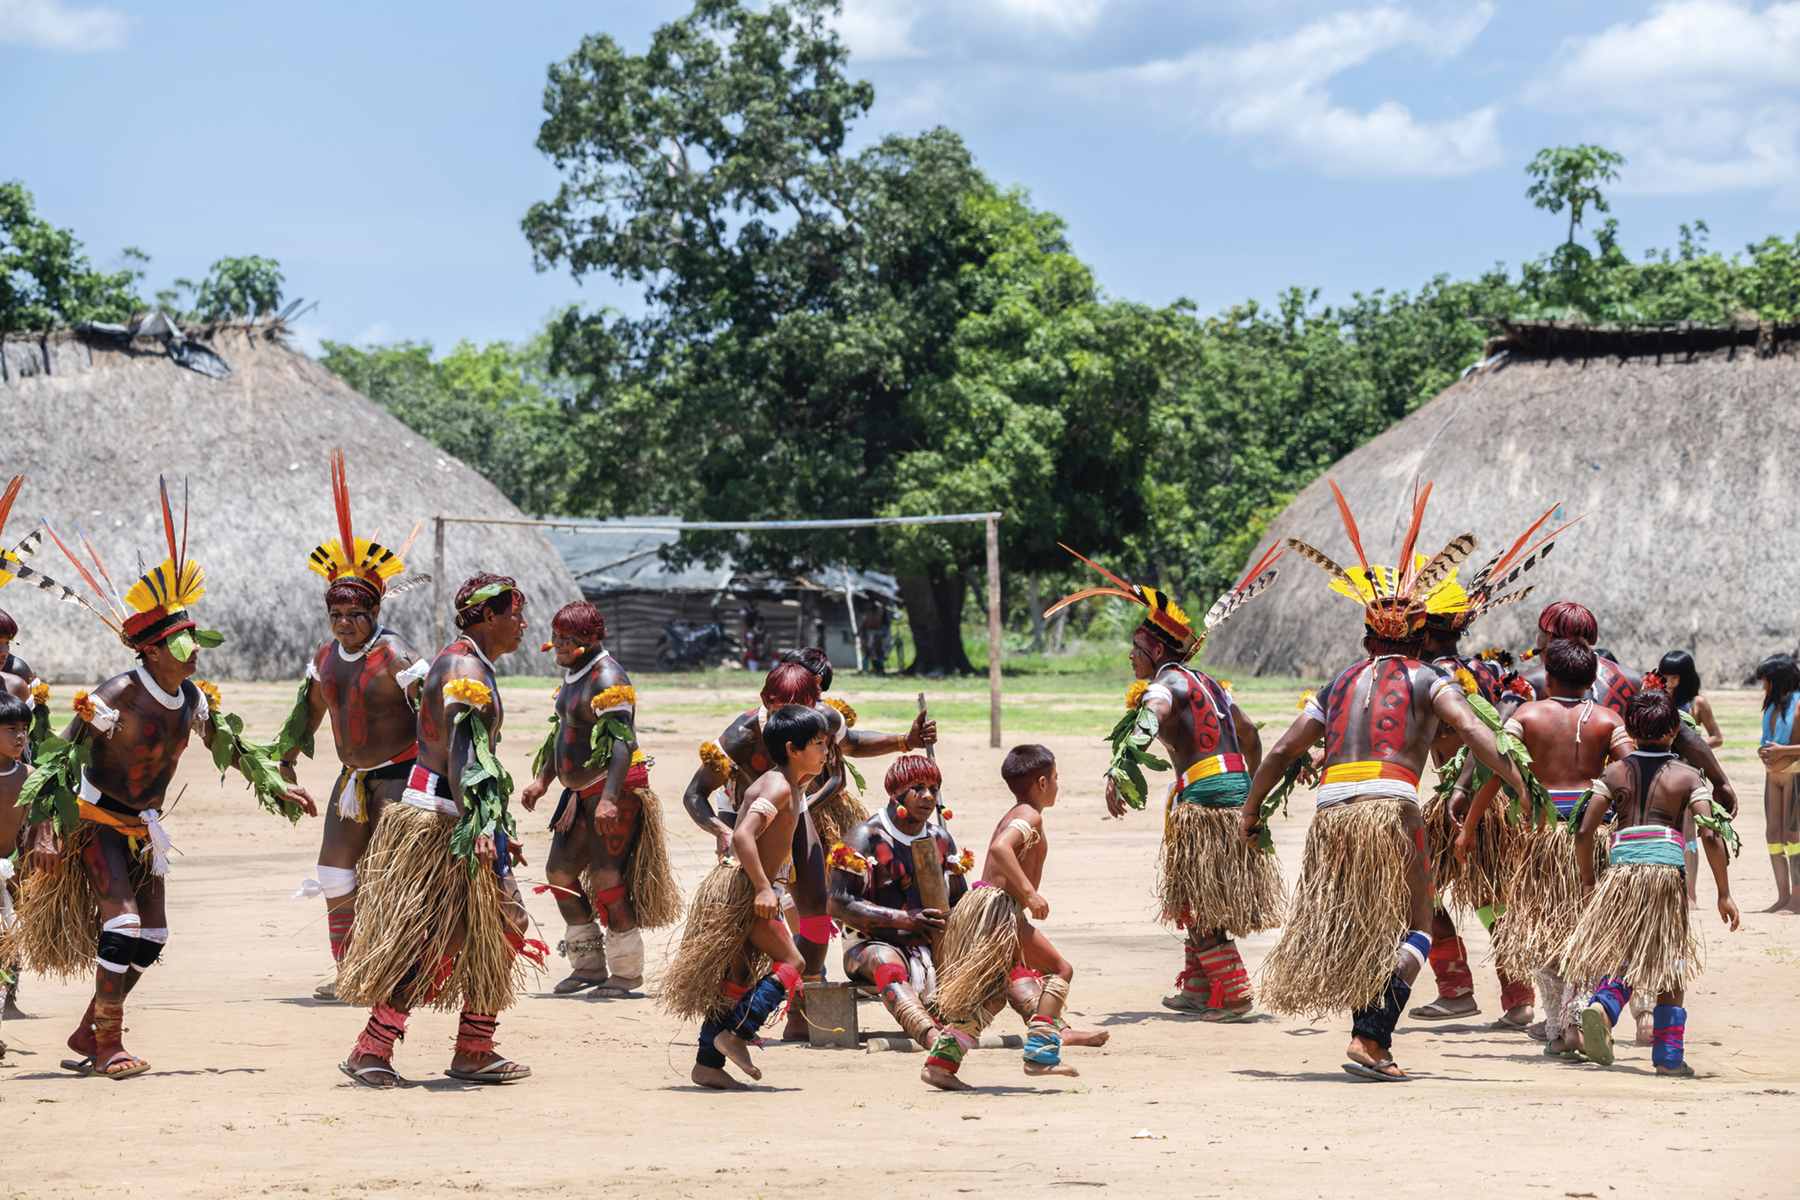 Fotografia. Indígenas caminhando em círculo, em uma área aberta sem pavimentação. Há crianças entre eles, e todos usam uma espécie de saia de palha, pinturas corporais e cocares coloridos. Ao fundo há moradias e árvores.